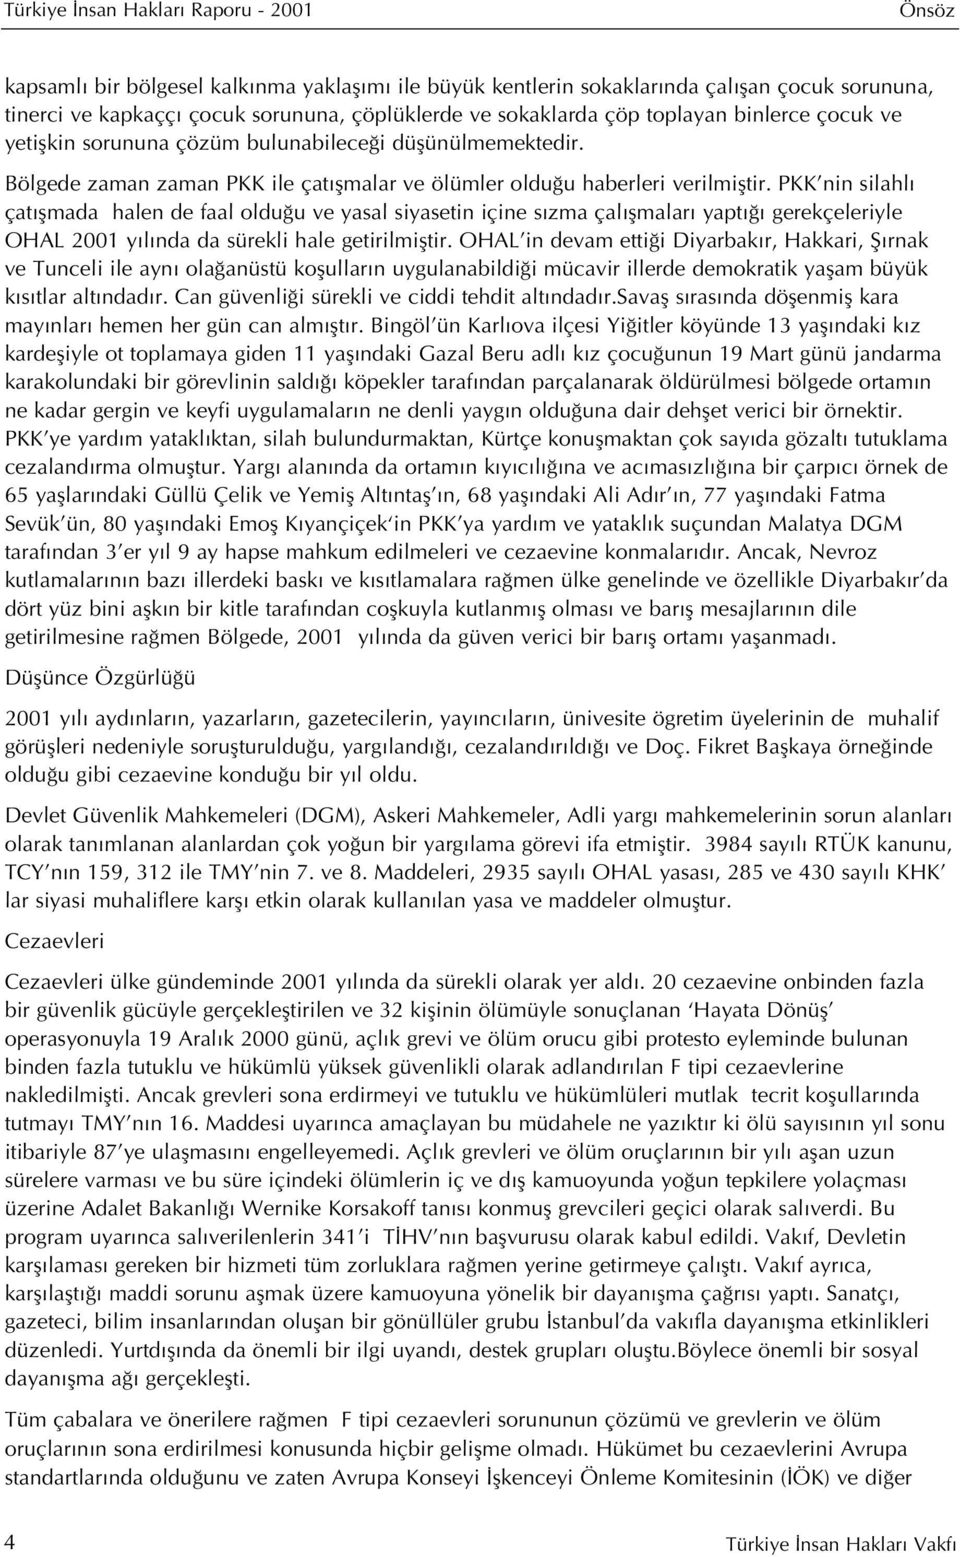 PKK nin silahl çat flmada halen de faal oldu u ve yasal siyasetin içine s zma çal flmalar yapt gerekçeleriyle OHAL 2001 y l nda da sürekli hale getirilmifltir.